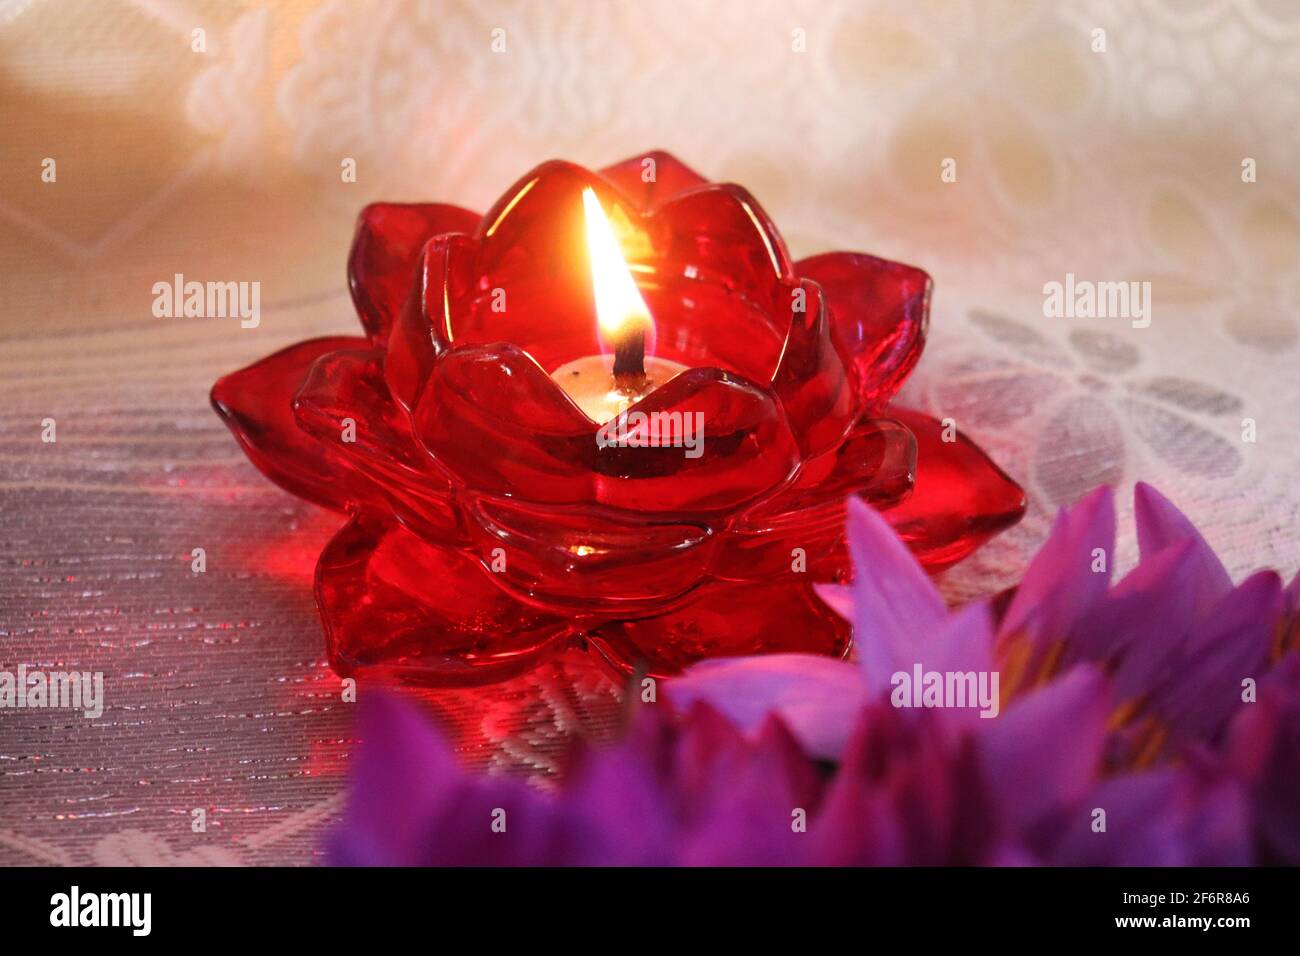 la flor de loto incandescente como la lámpara roja Foto de stock